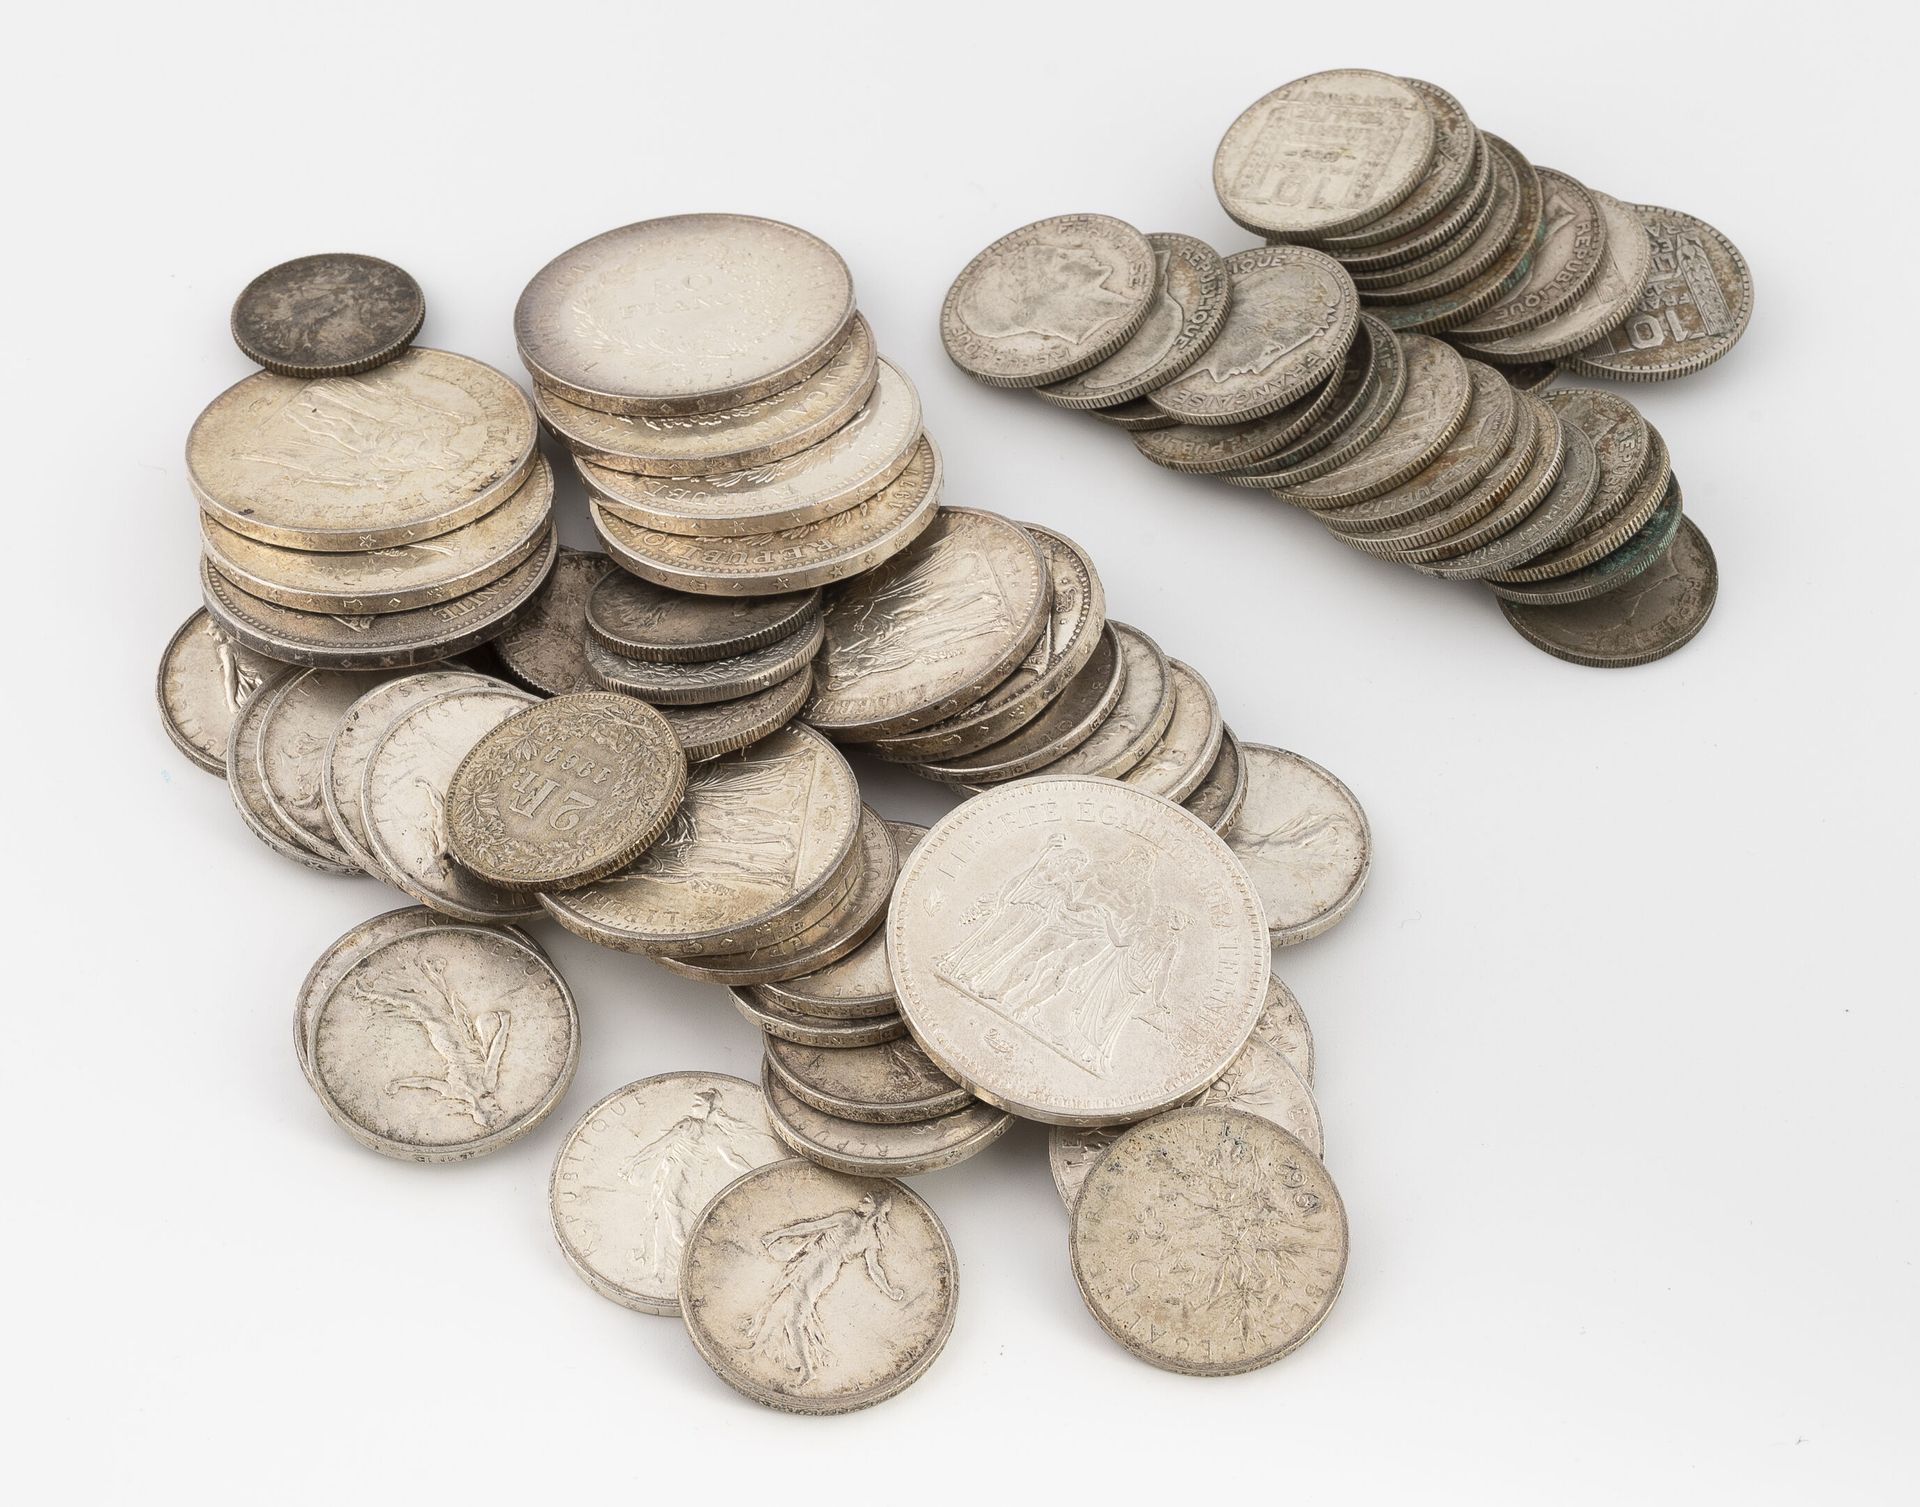 FRANCE 一批钱币包括: 
- 四个1法郎的硬币。
- 五个2法郎的硬币。
- 二十六枚5法郎硬币。
- 三枚10法郎的硬币。
- 一枚100法郎的硬币。 &hellip;